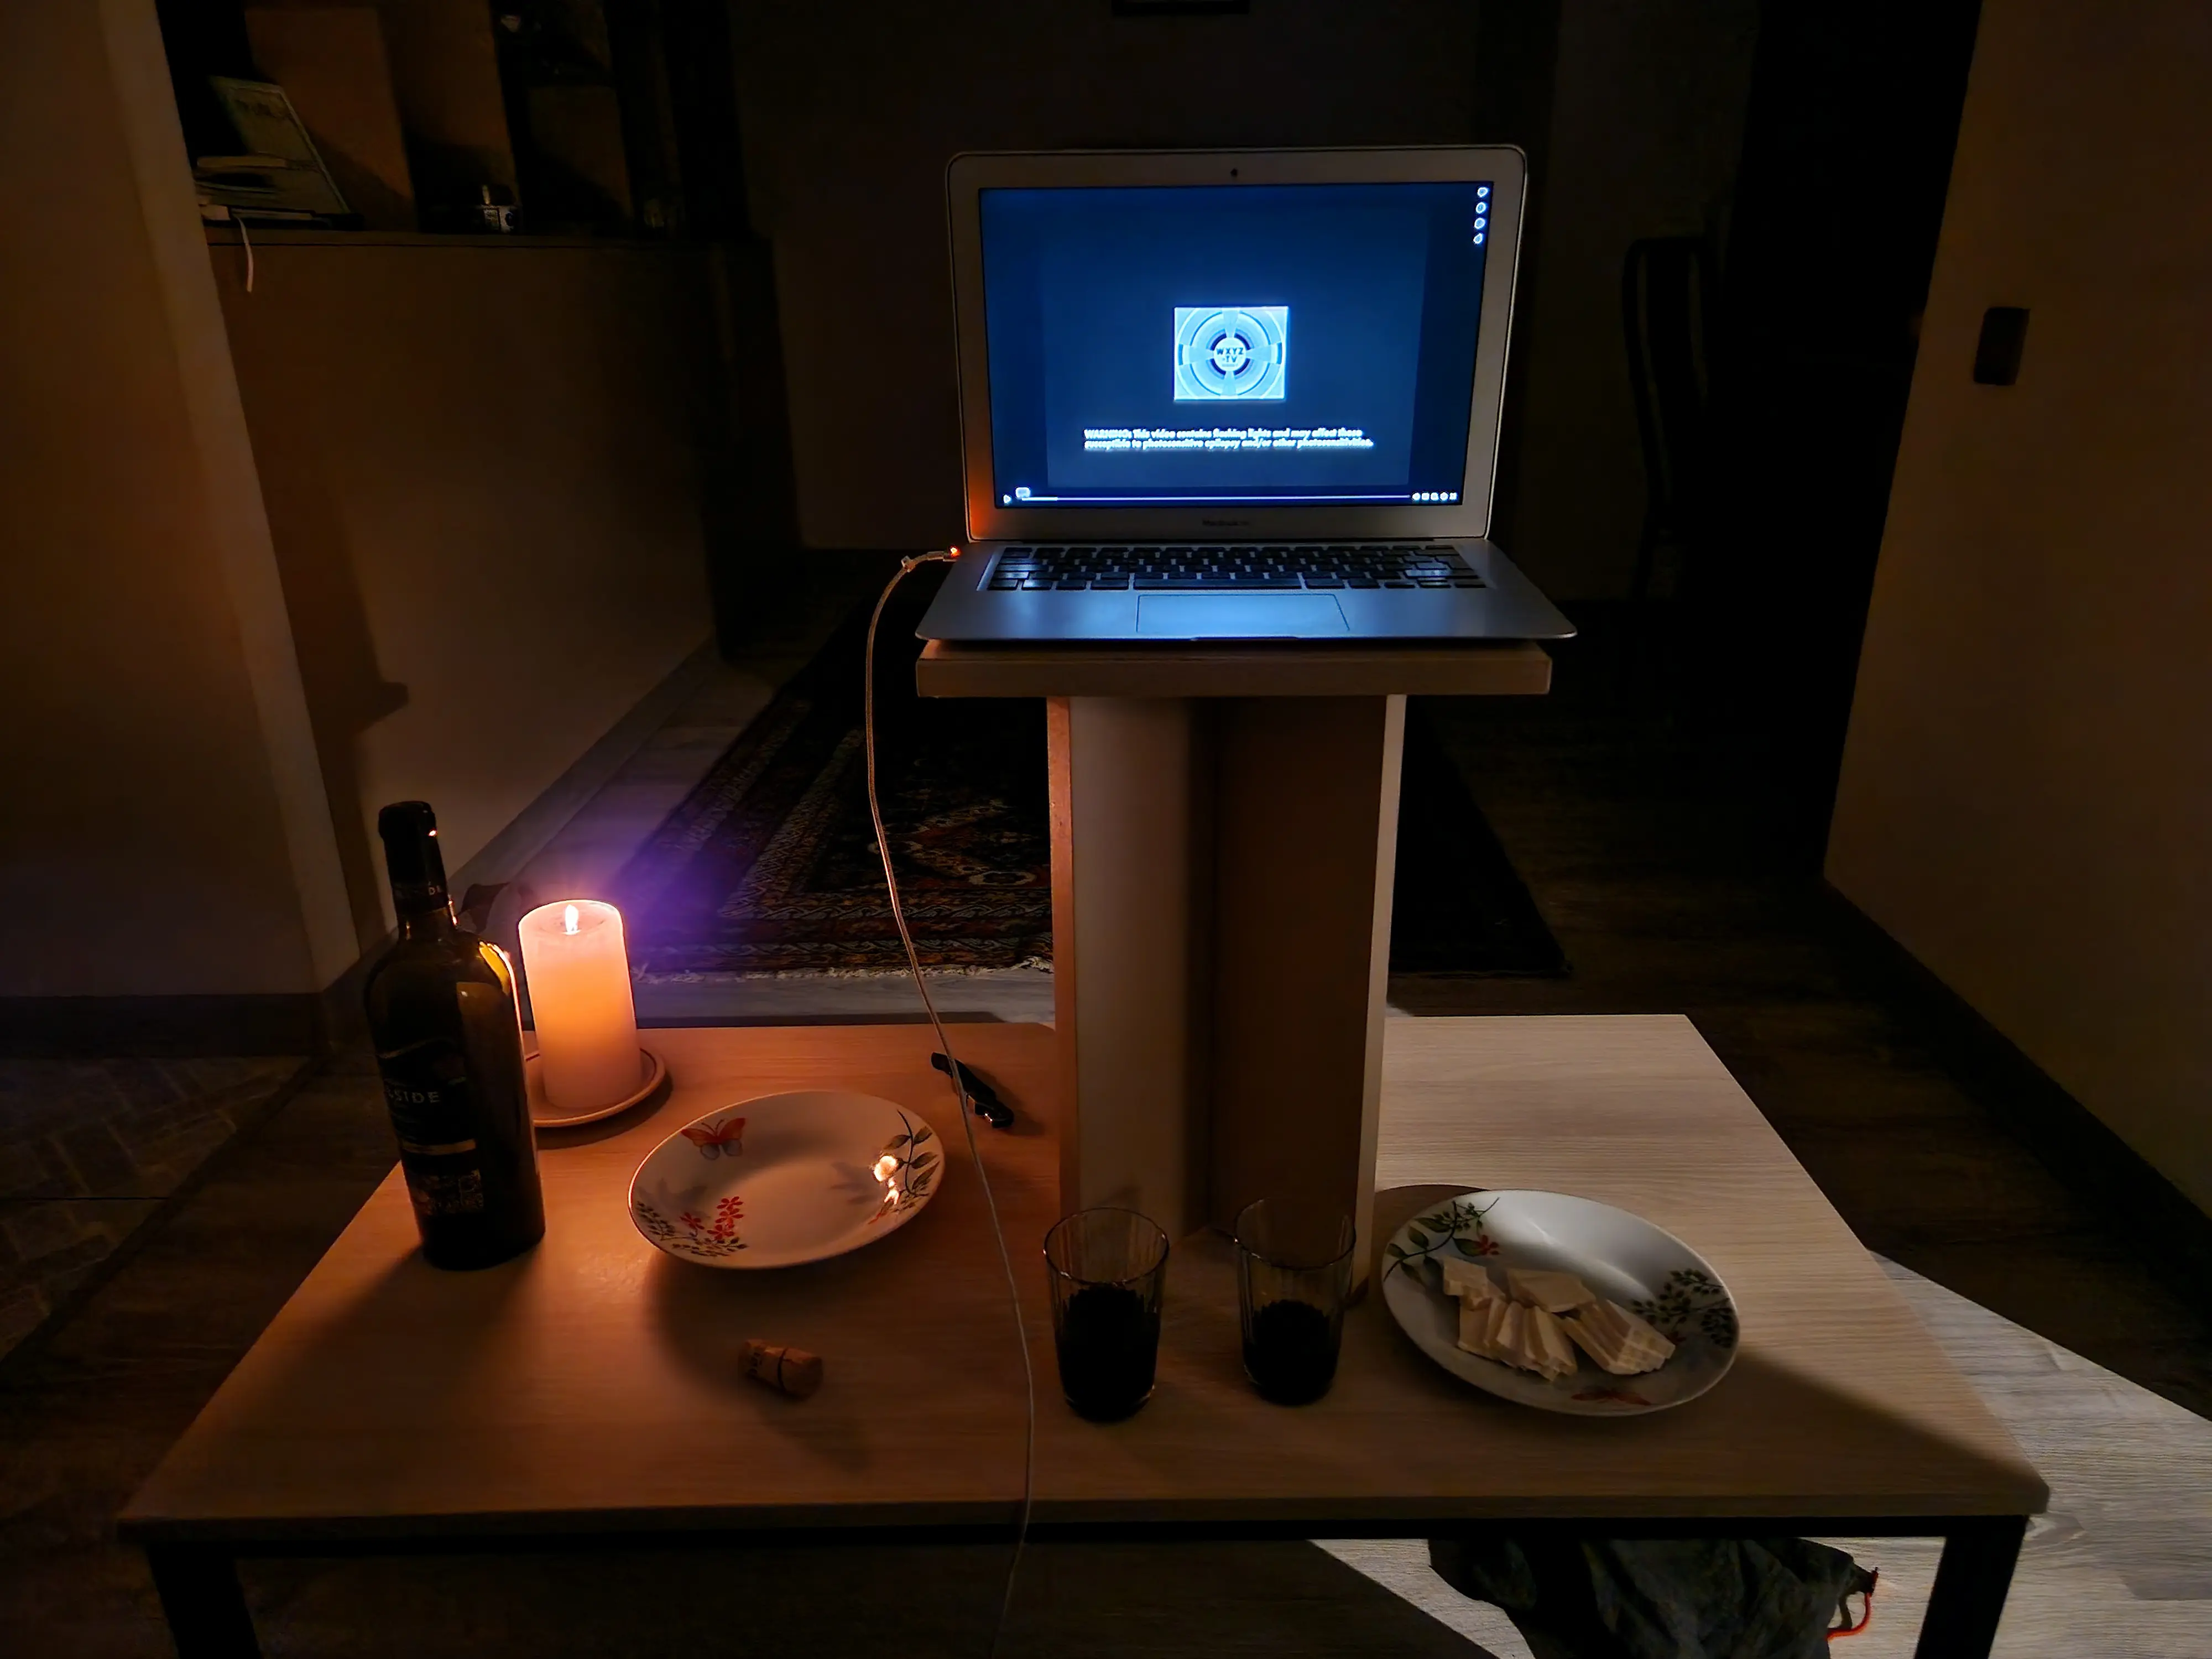 Notre setup de film à la maison, le laptop de Robin est posé sur un tabouret en équilibre sur la table-basse du salon. On a allumé une bougie, fait une petite assiette de fromage, et ouvert une bouteille de vin azéri.